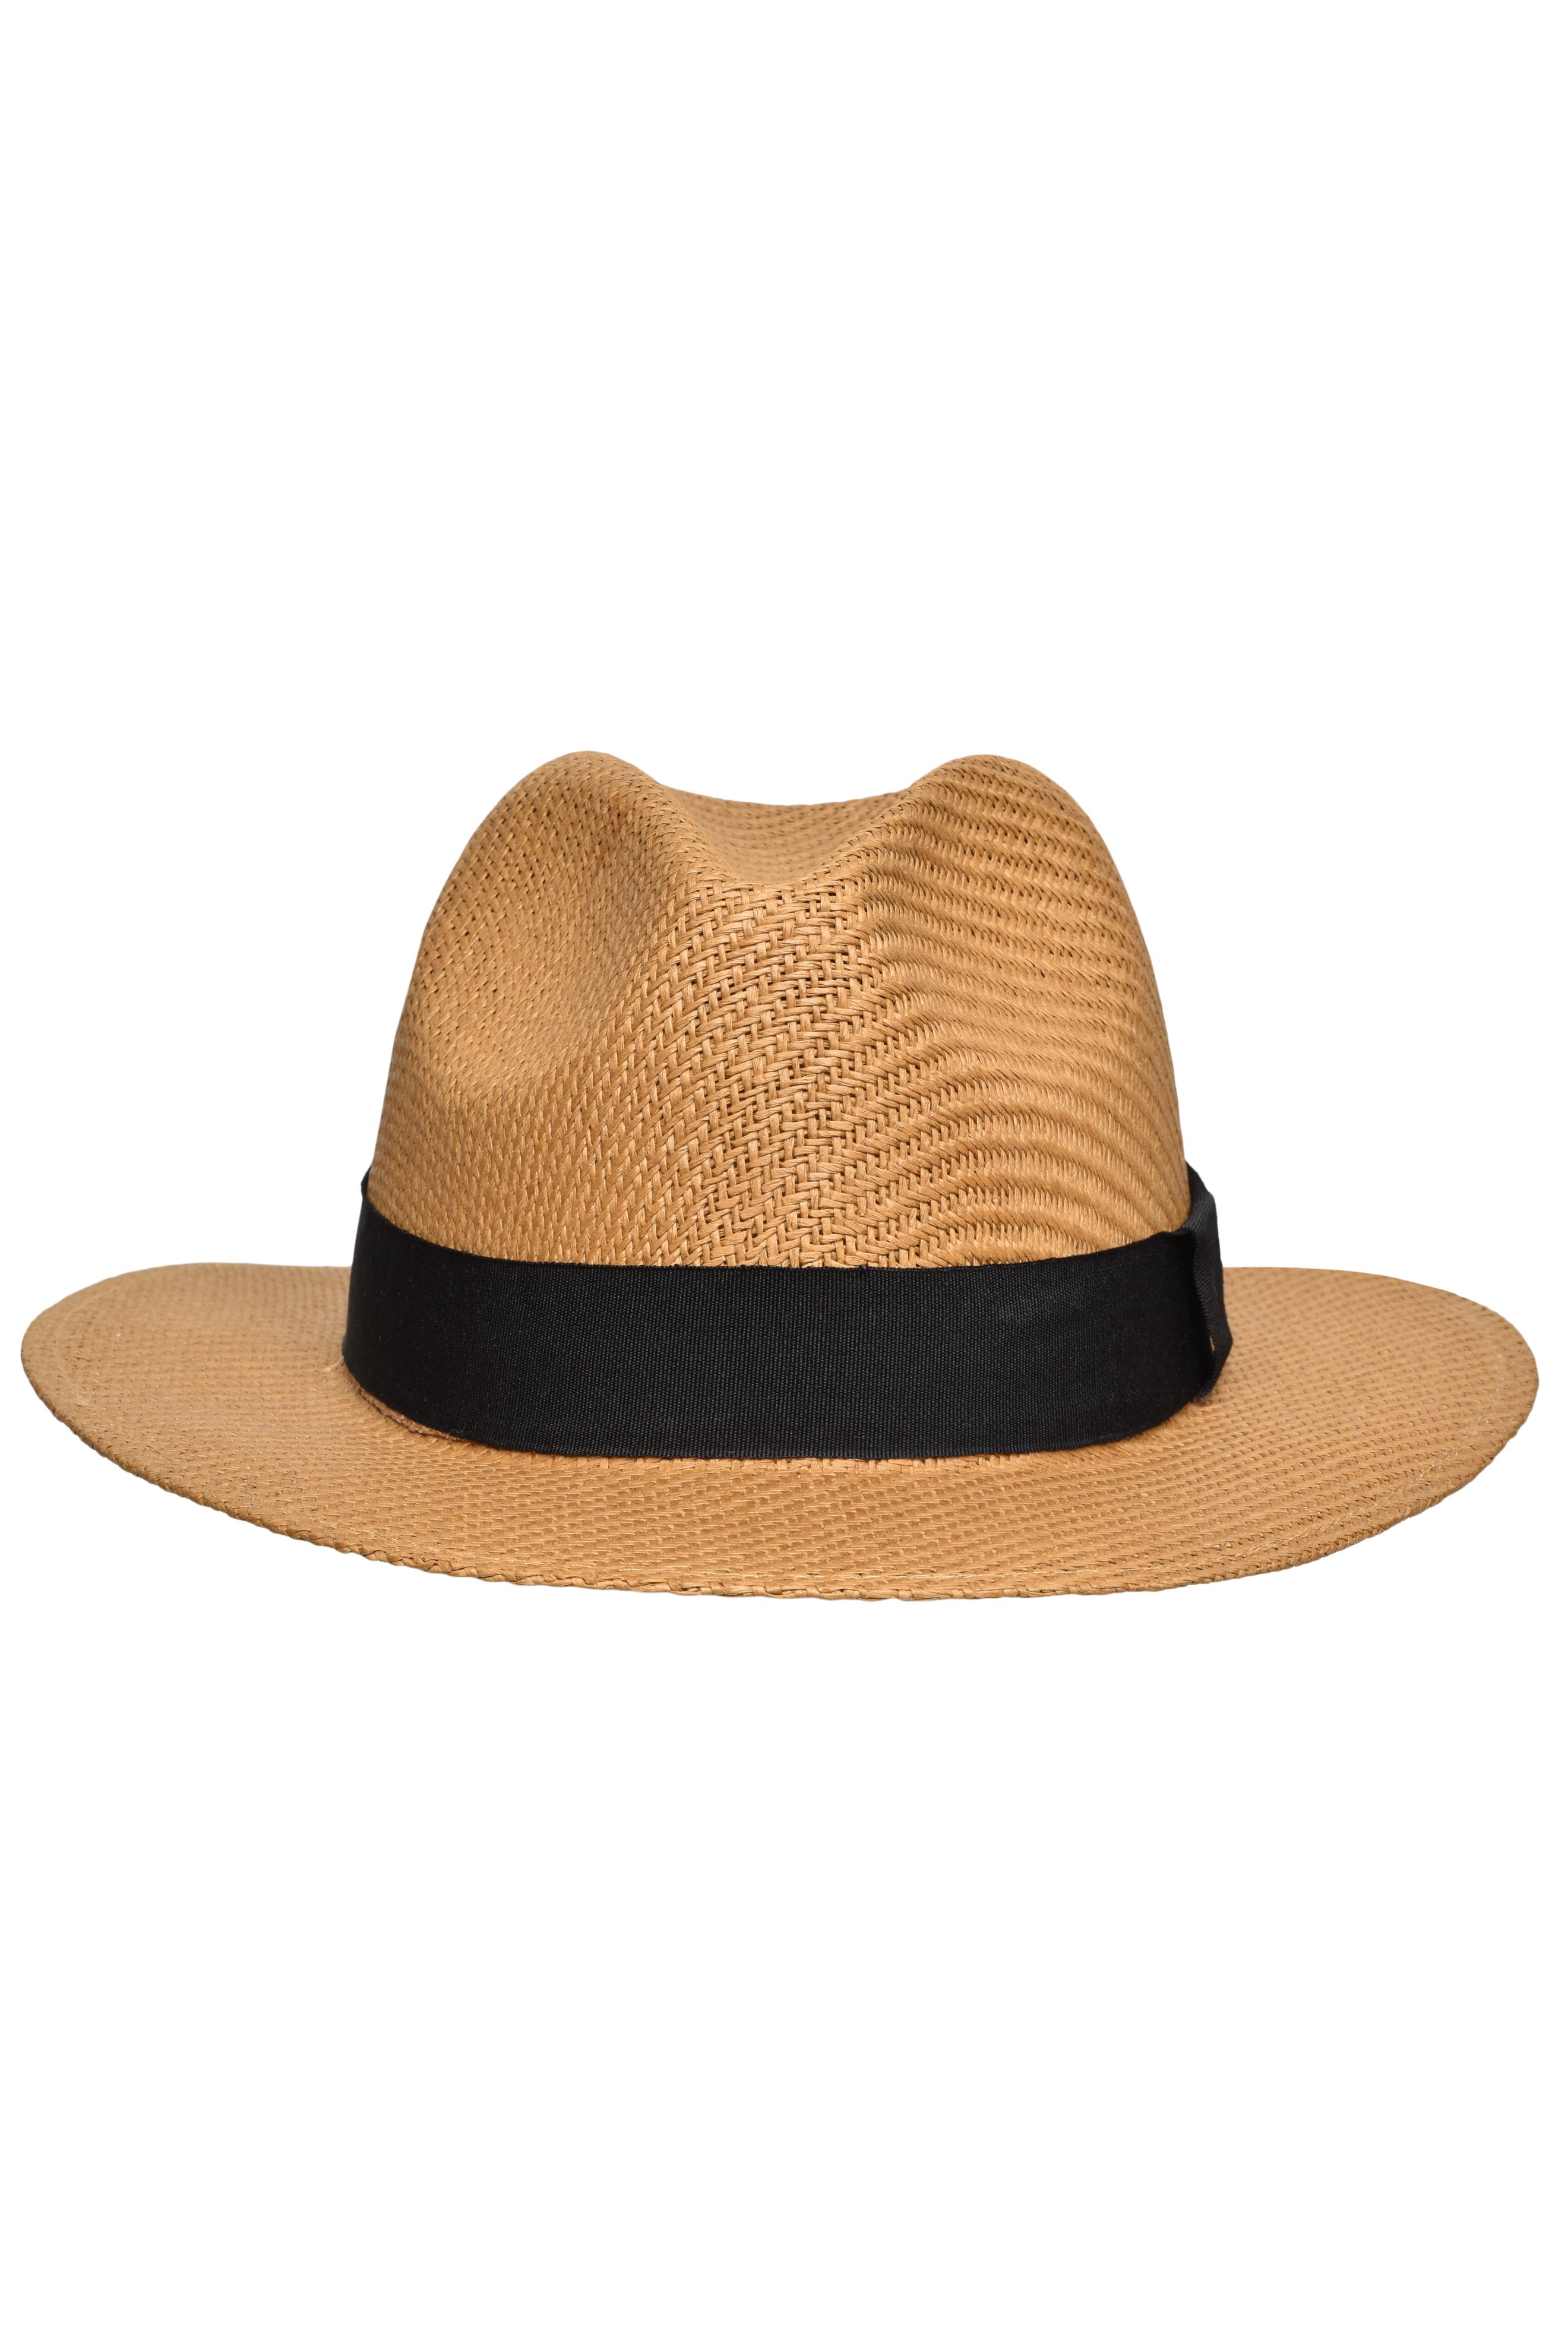 Traveller Hat MB6599 Stilvoller Hut in leichter Sommerqualität